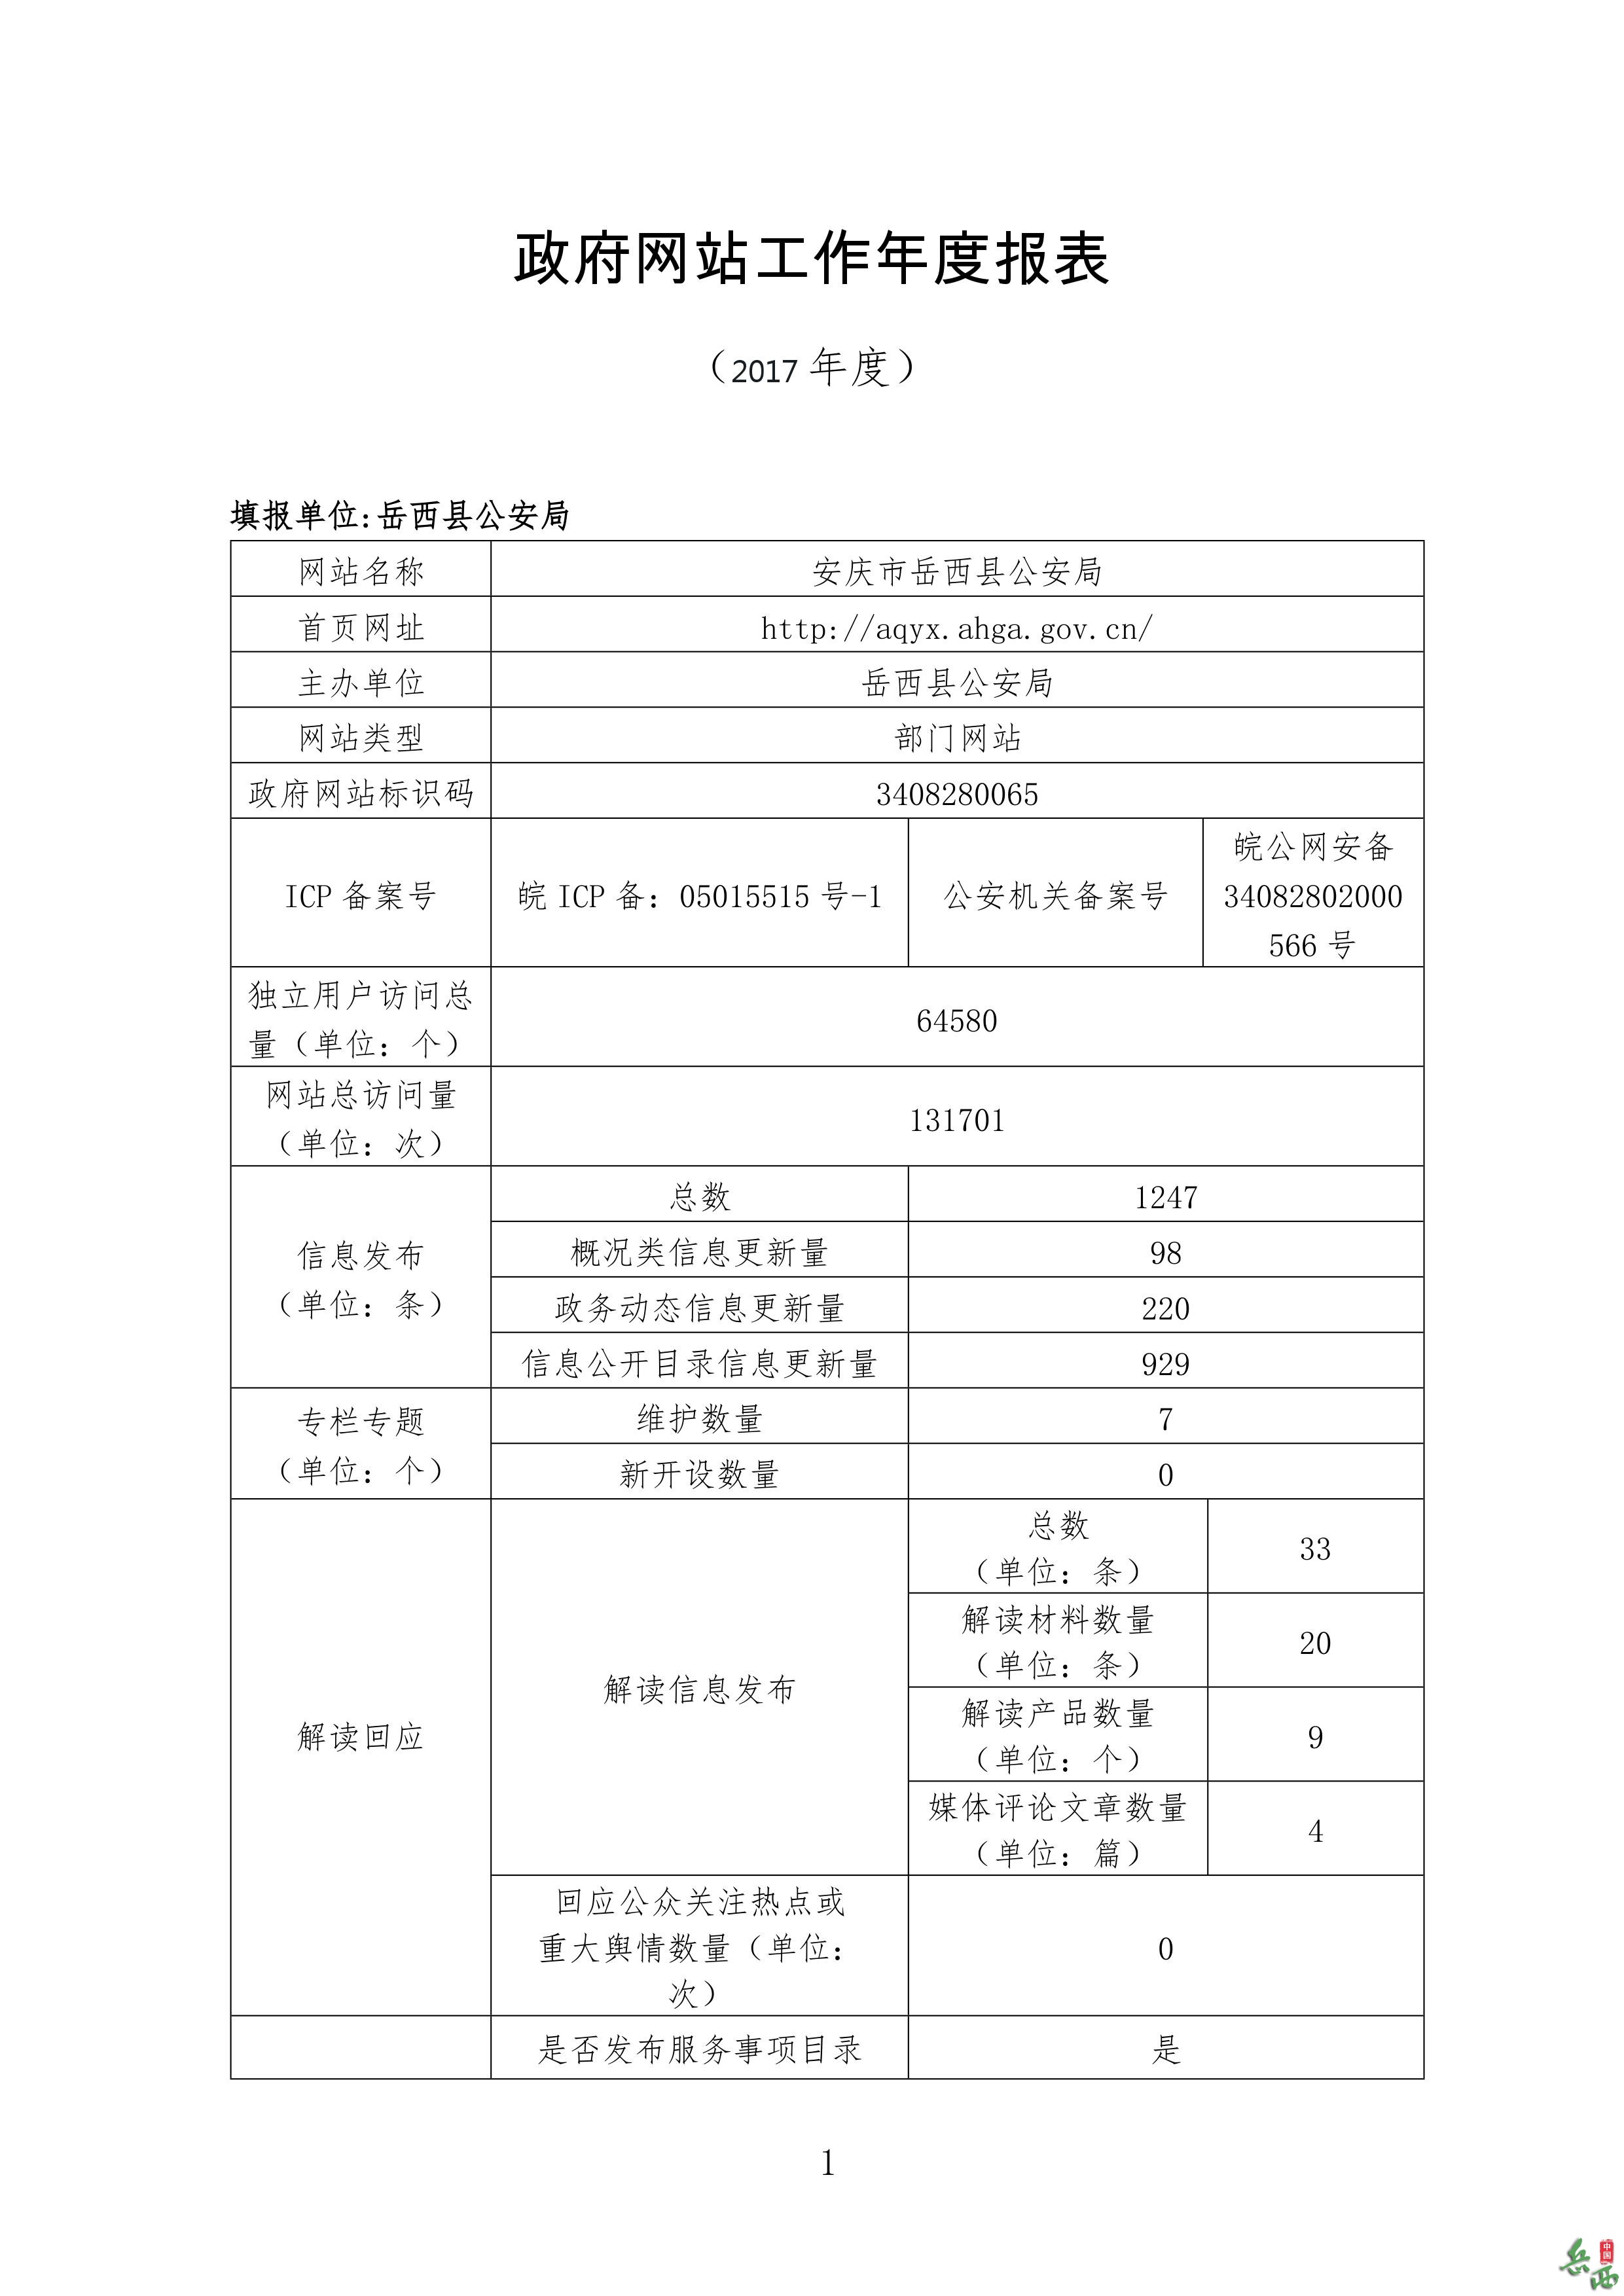 岳西县公安局网站工作2017年度报表